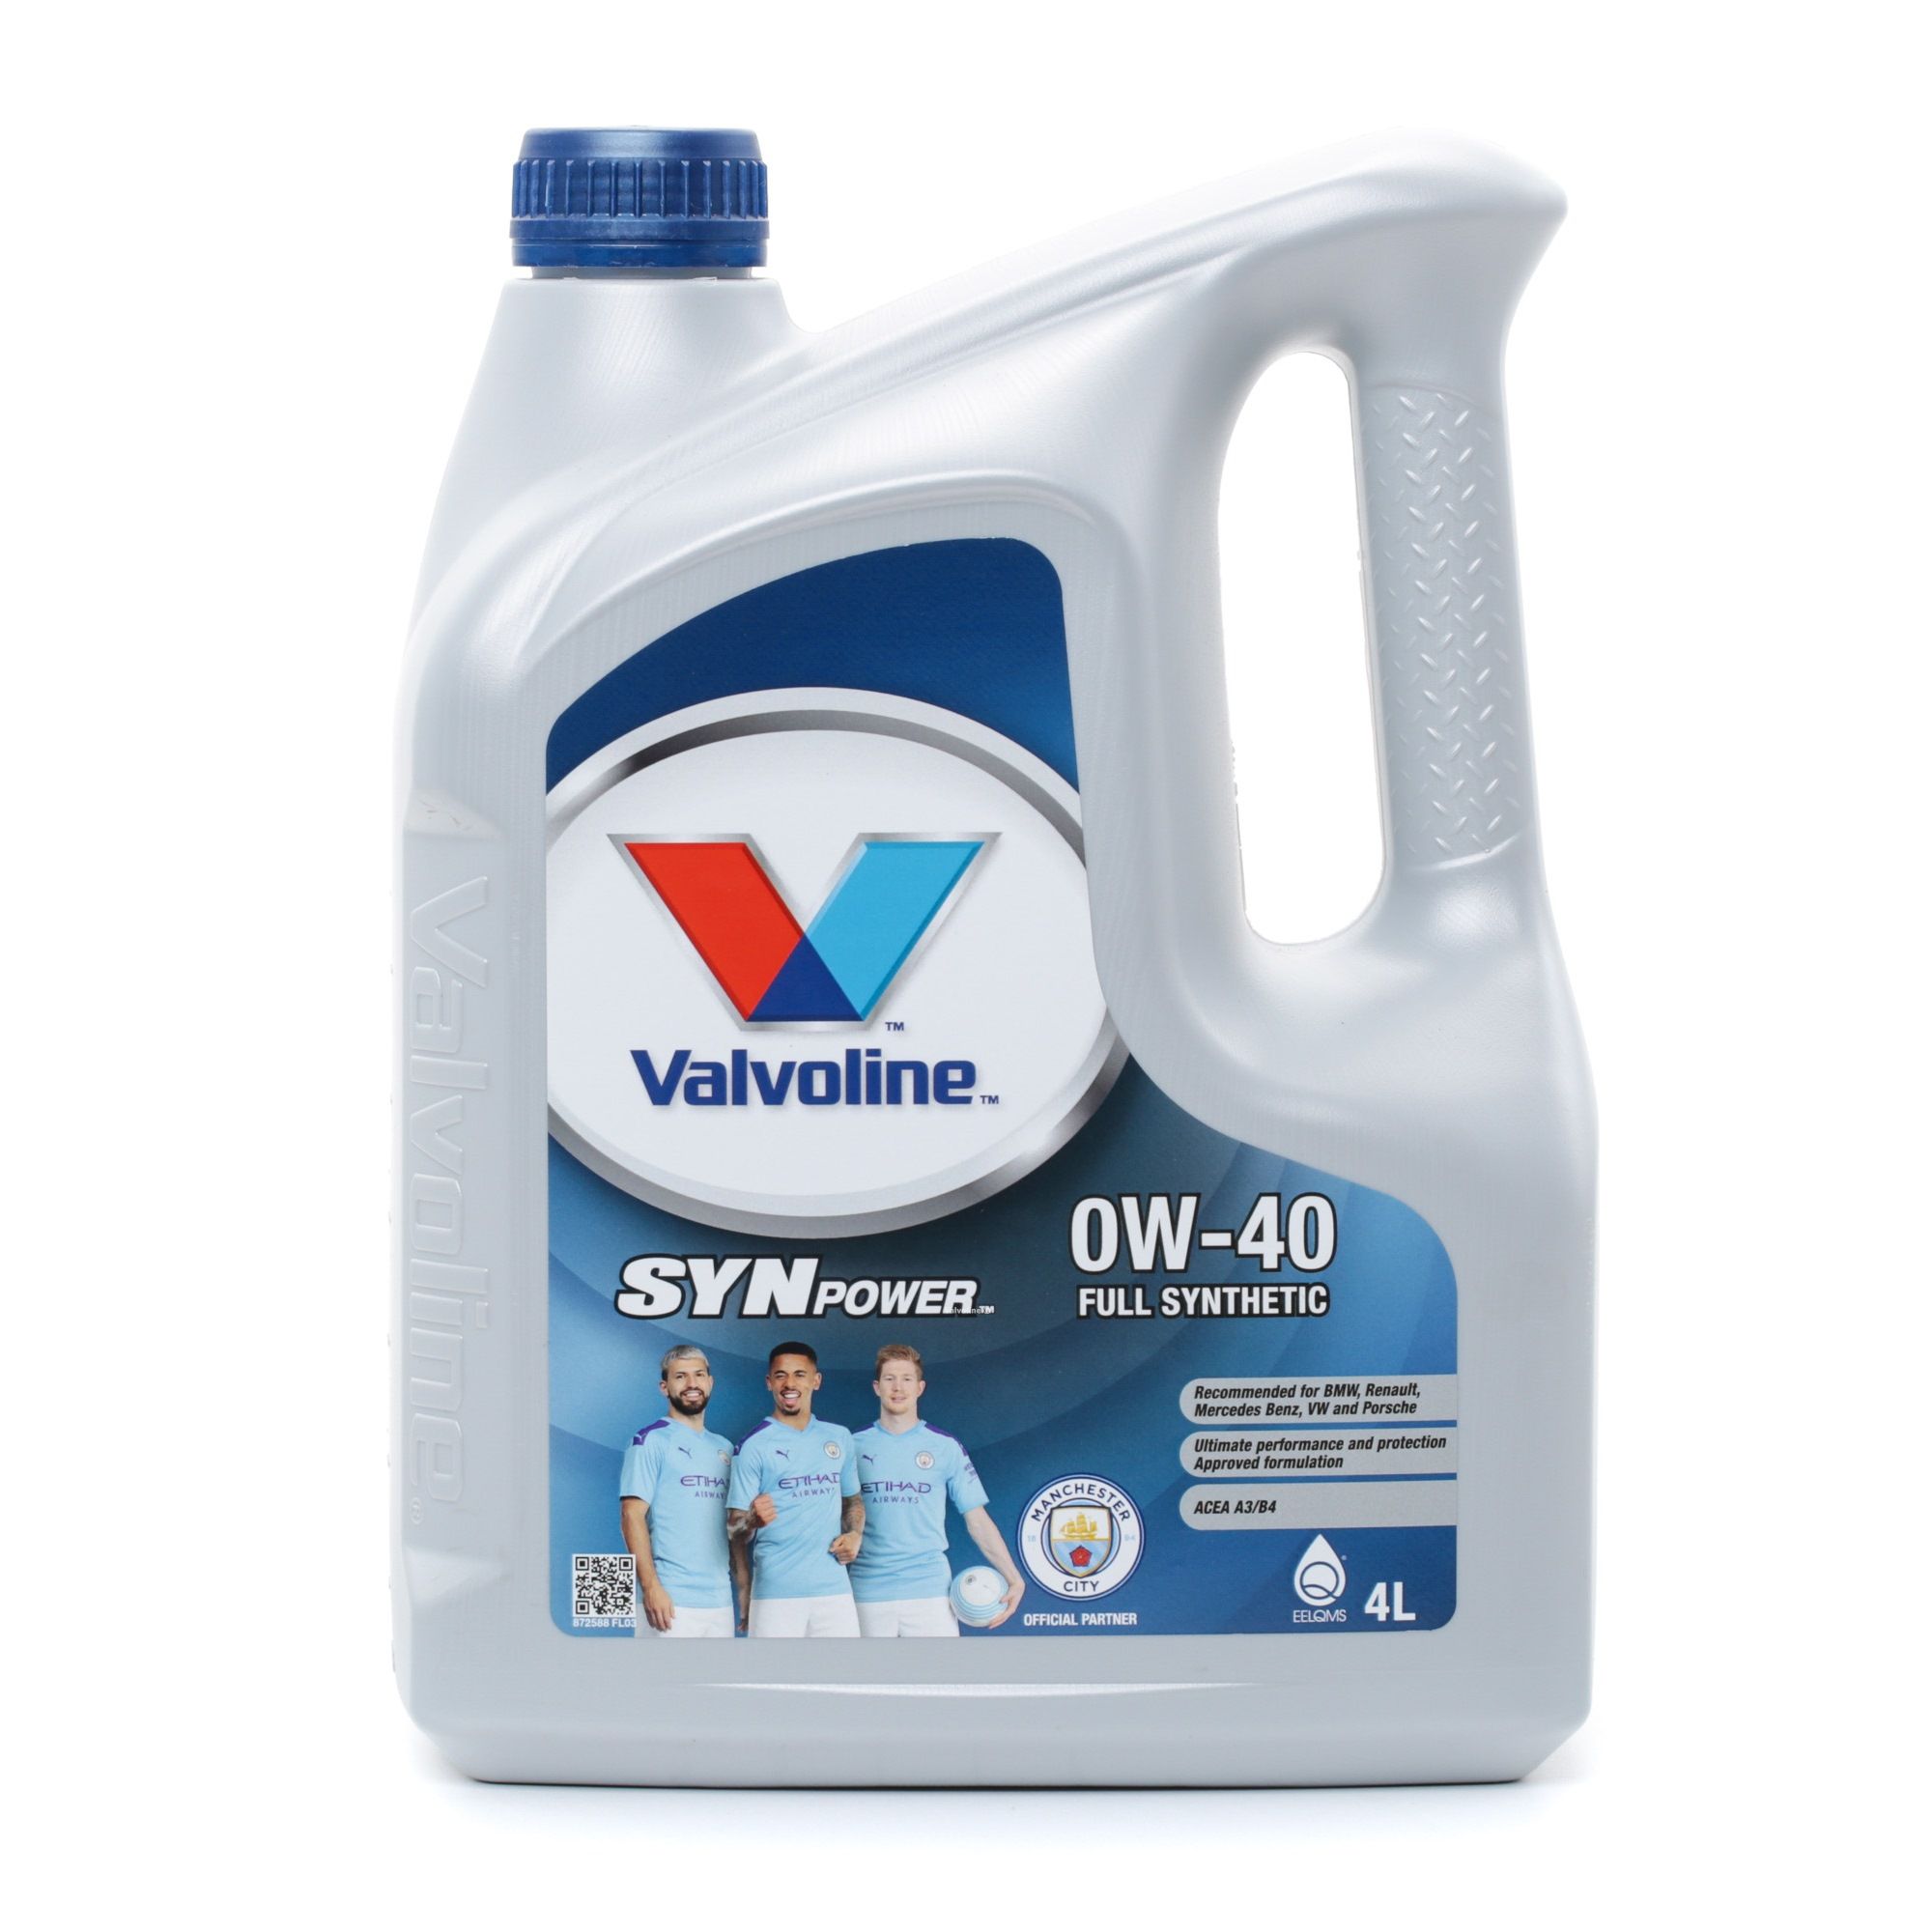 Great value for money - Valvoline Engine oil 872588